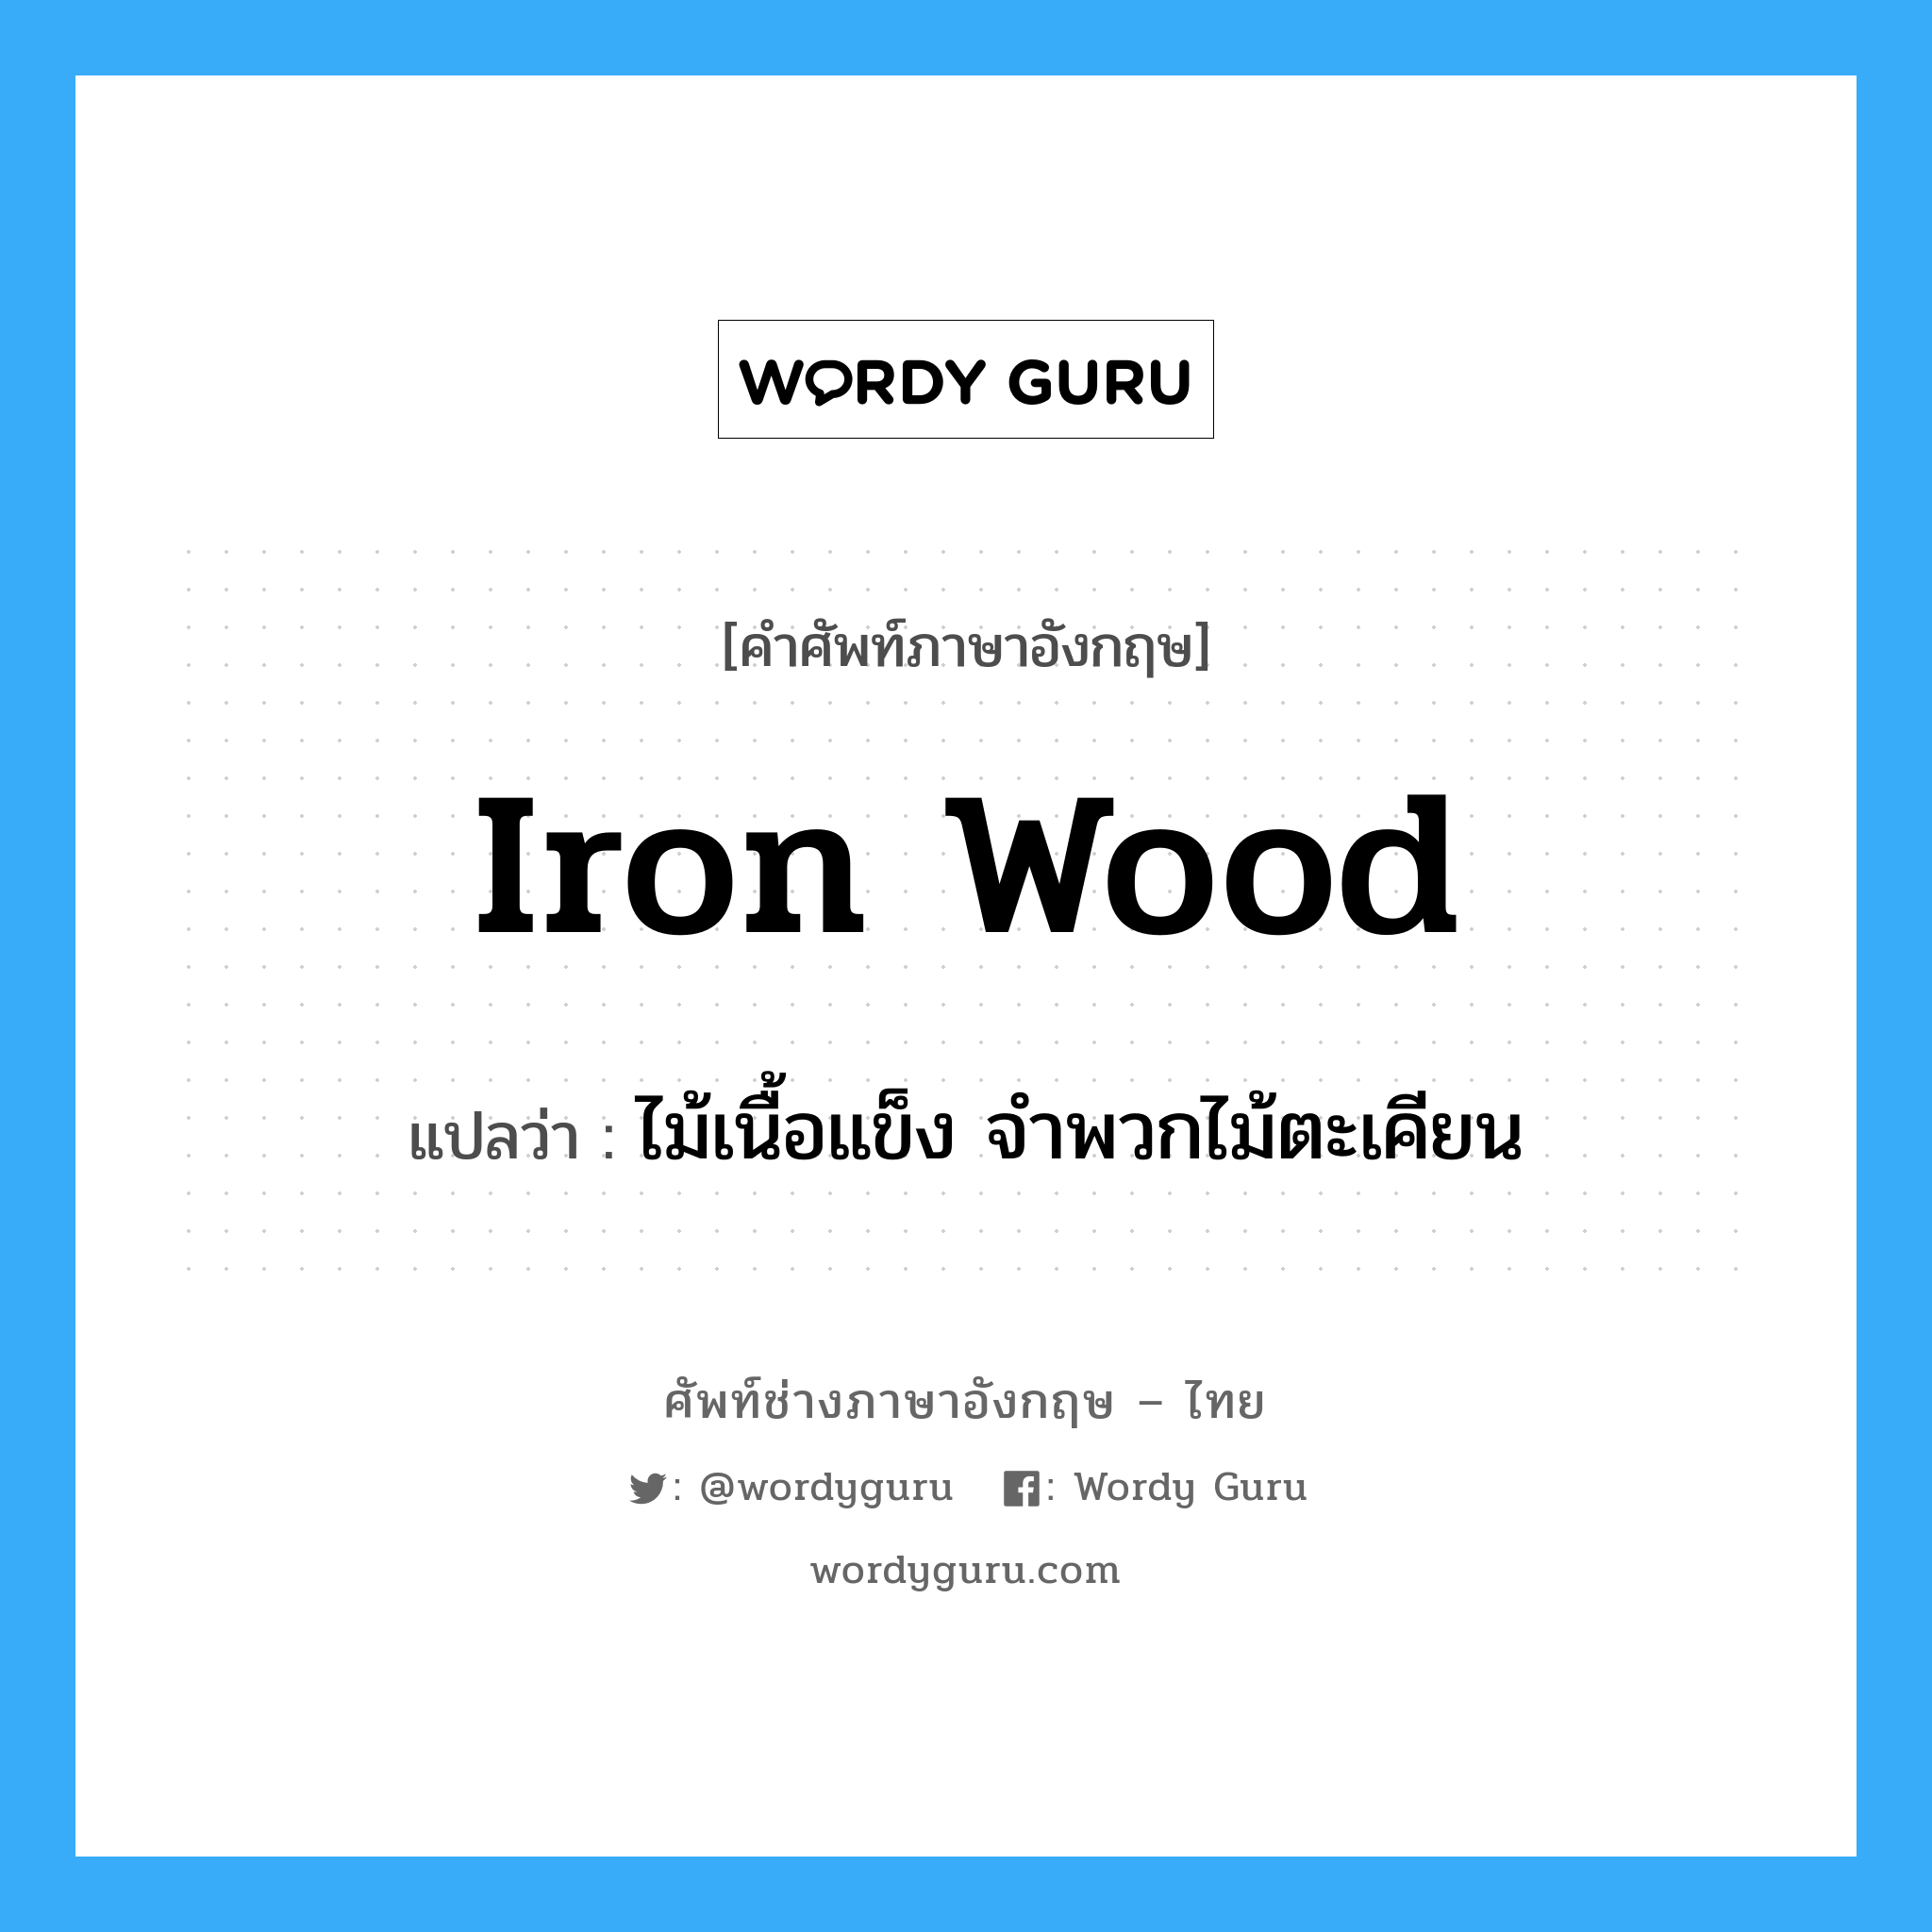 ไม้เนื้อแข็ง จำพวกไม้ตะเคียน ภาษาอังกฤษ?, คำศัพท์ช่างภาษาอังกฤษ - ไทย ไม้เนื้อแข็ง จำพวกไม้ตะเคียน คำศัพท์ภาษาอังกฤษ ไม้เนื้อแข็ง จำพวกไม้ตะเคียน แปลว่า iron wood